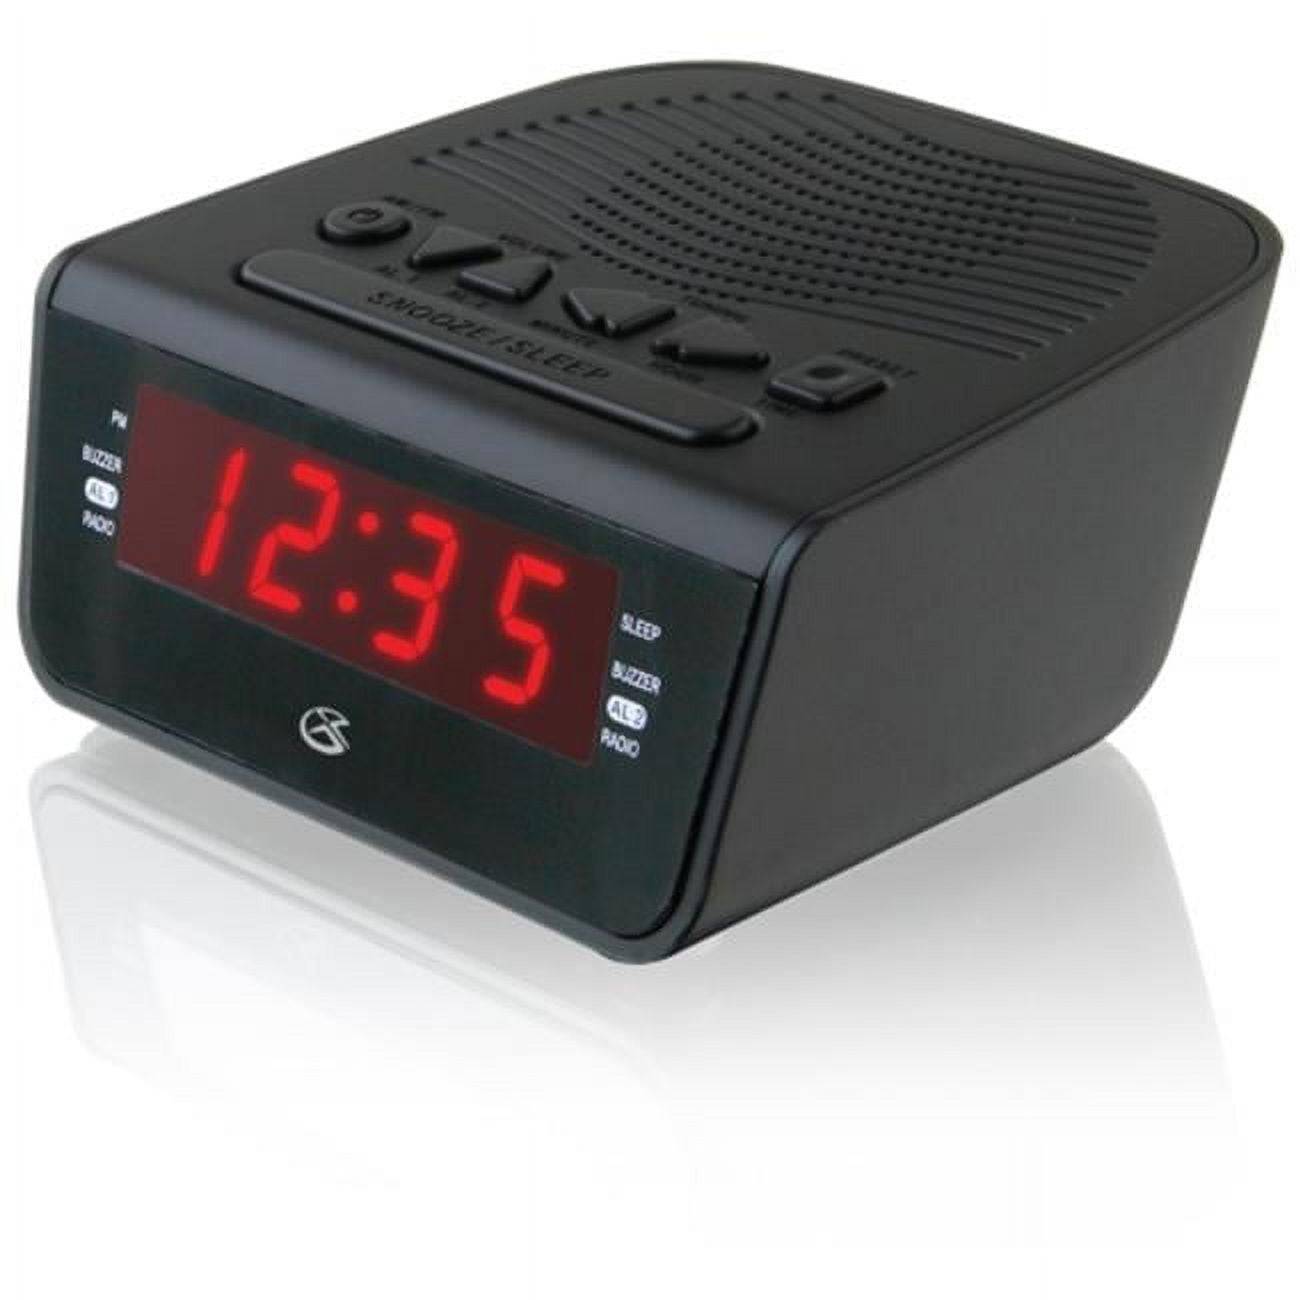 Las mejores ofertas en Radios despertadores Casio Alarma